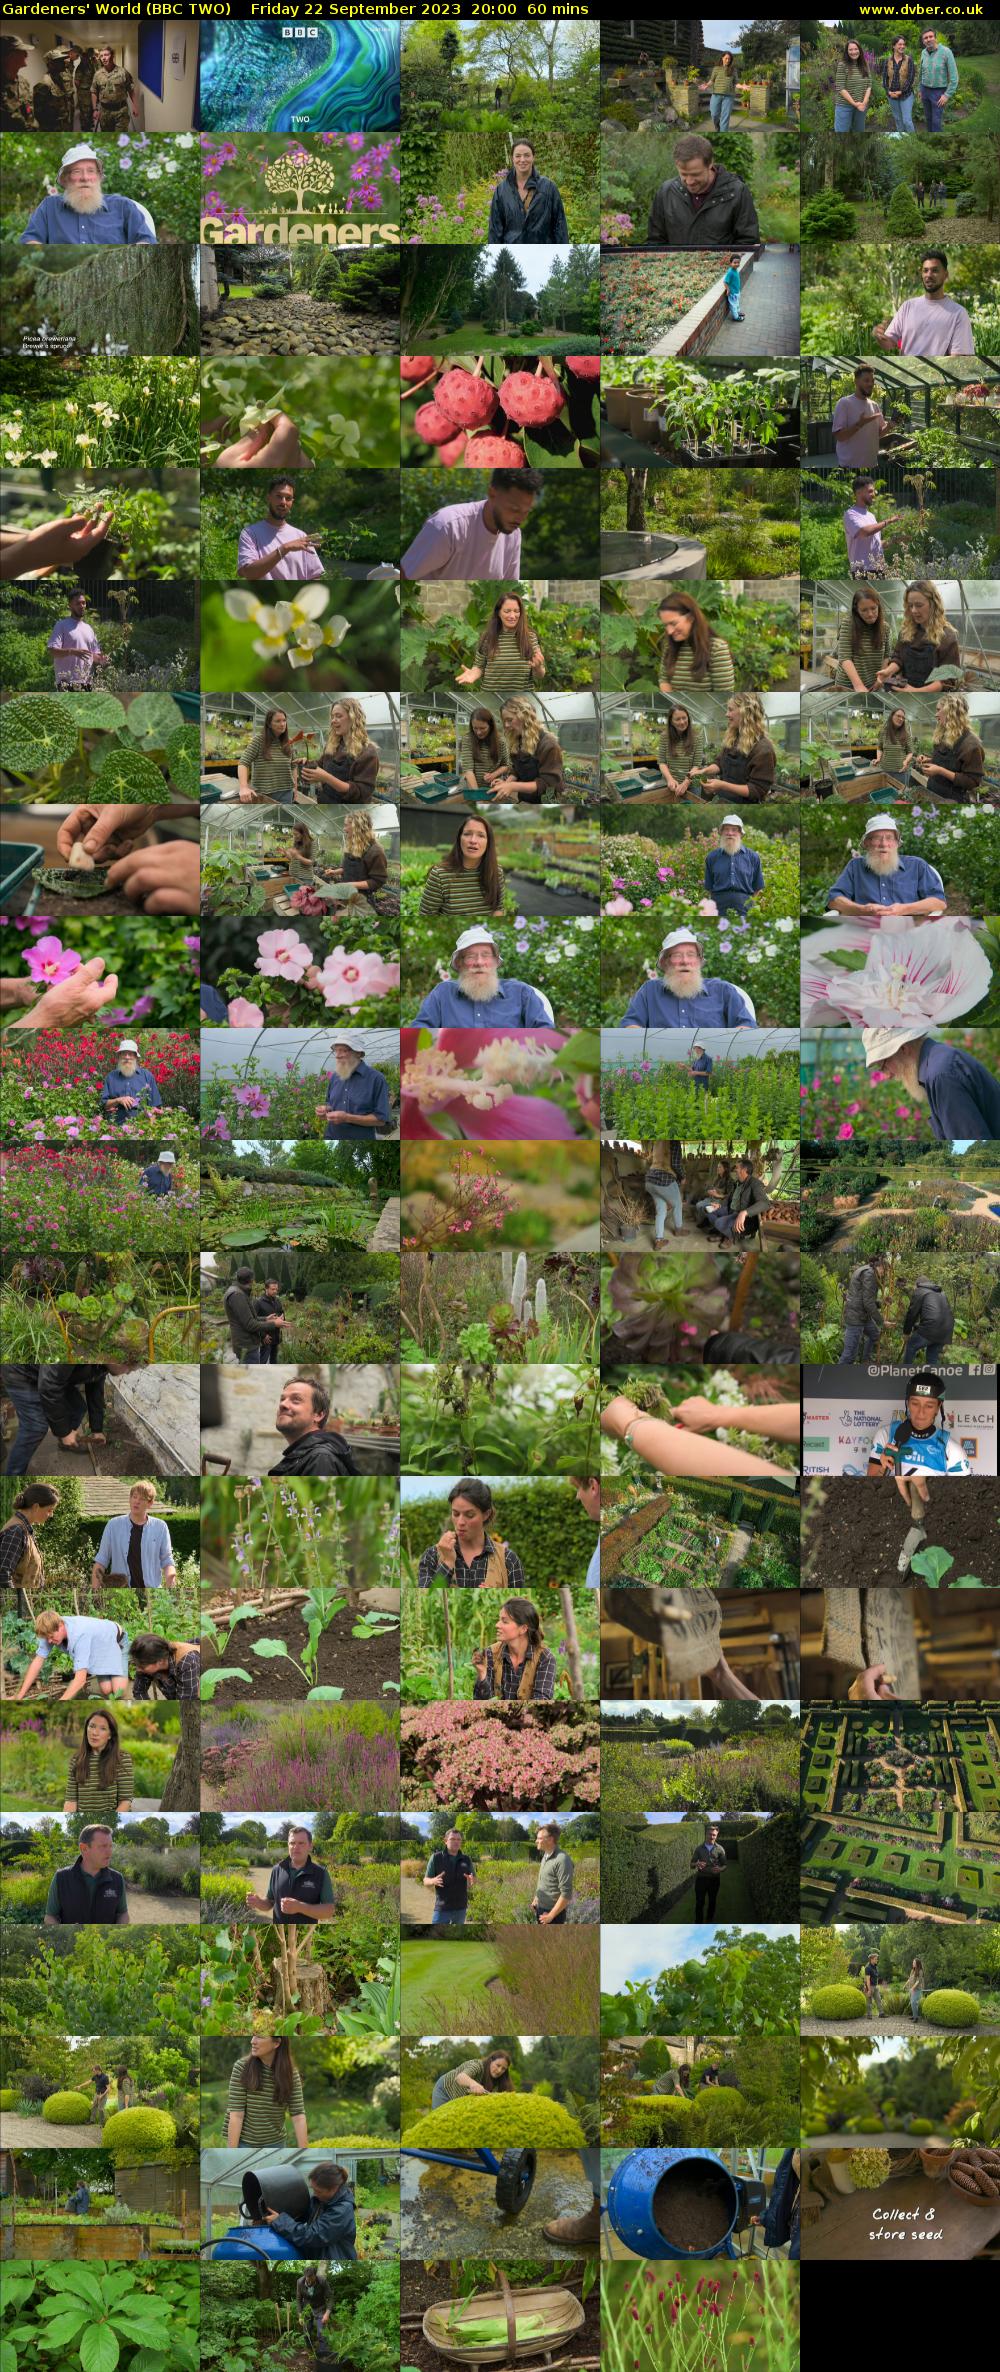 Gardeners' World (BBC TWO) Friday 22 September 2023 20:00 - 21:00